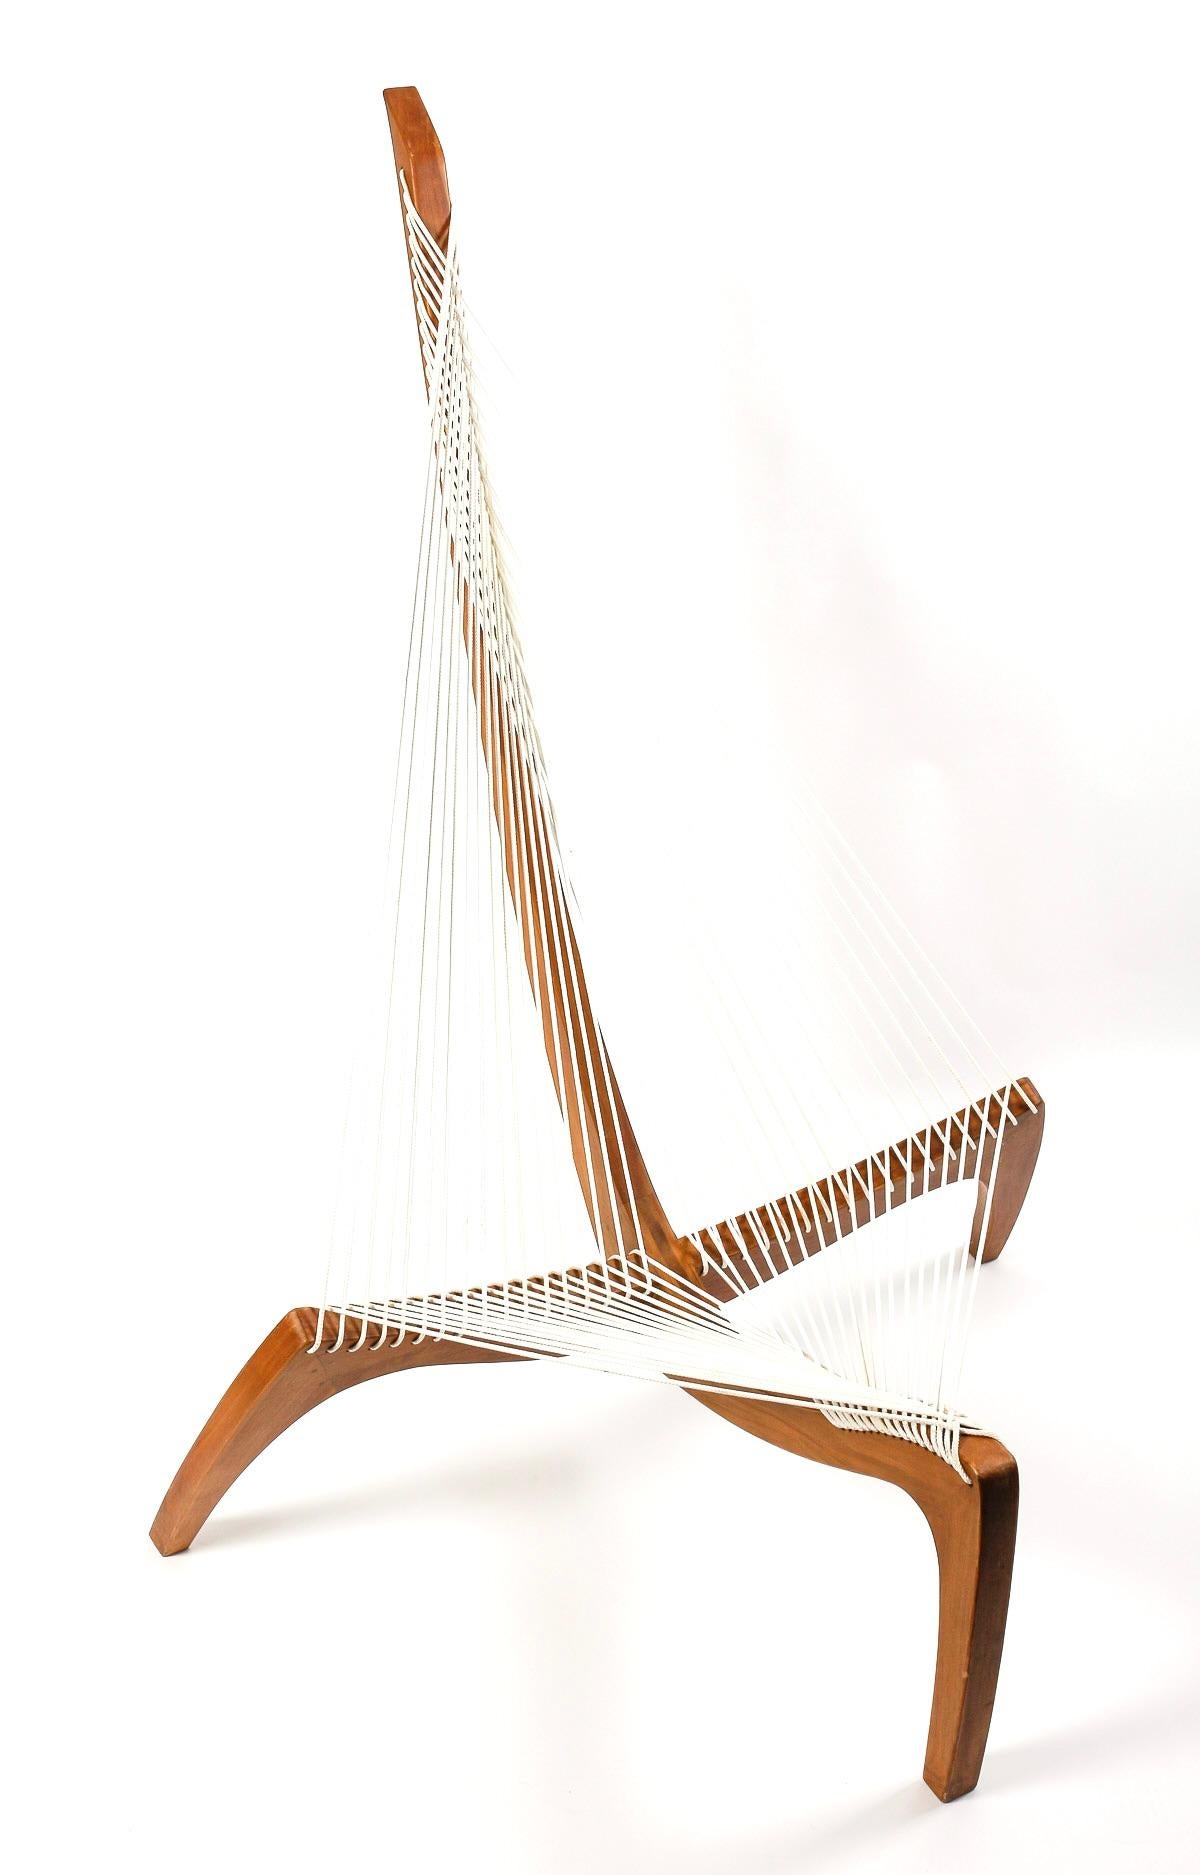 Late 20th Century 1970 Pair harp chair by Jørgen Høvelskov for Christensen & Larsen Møbelhandværk.